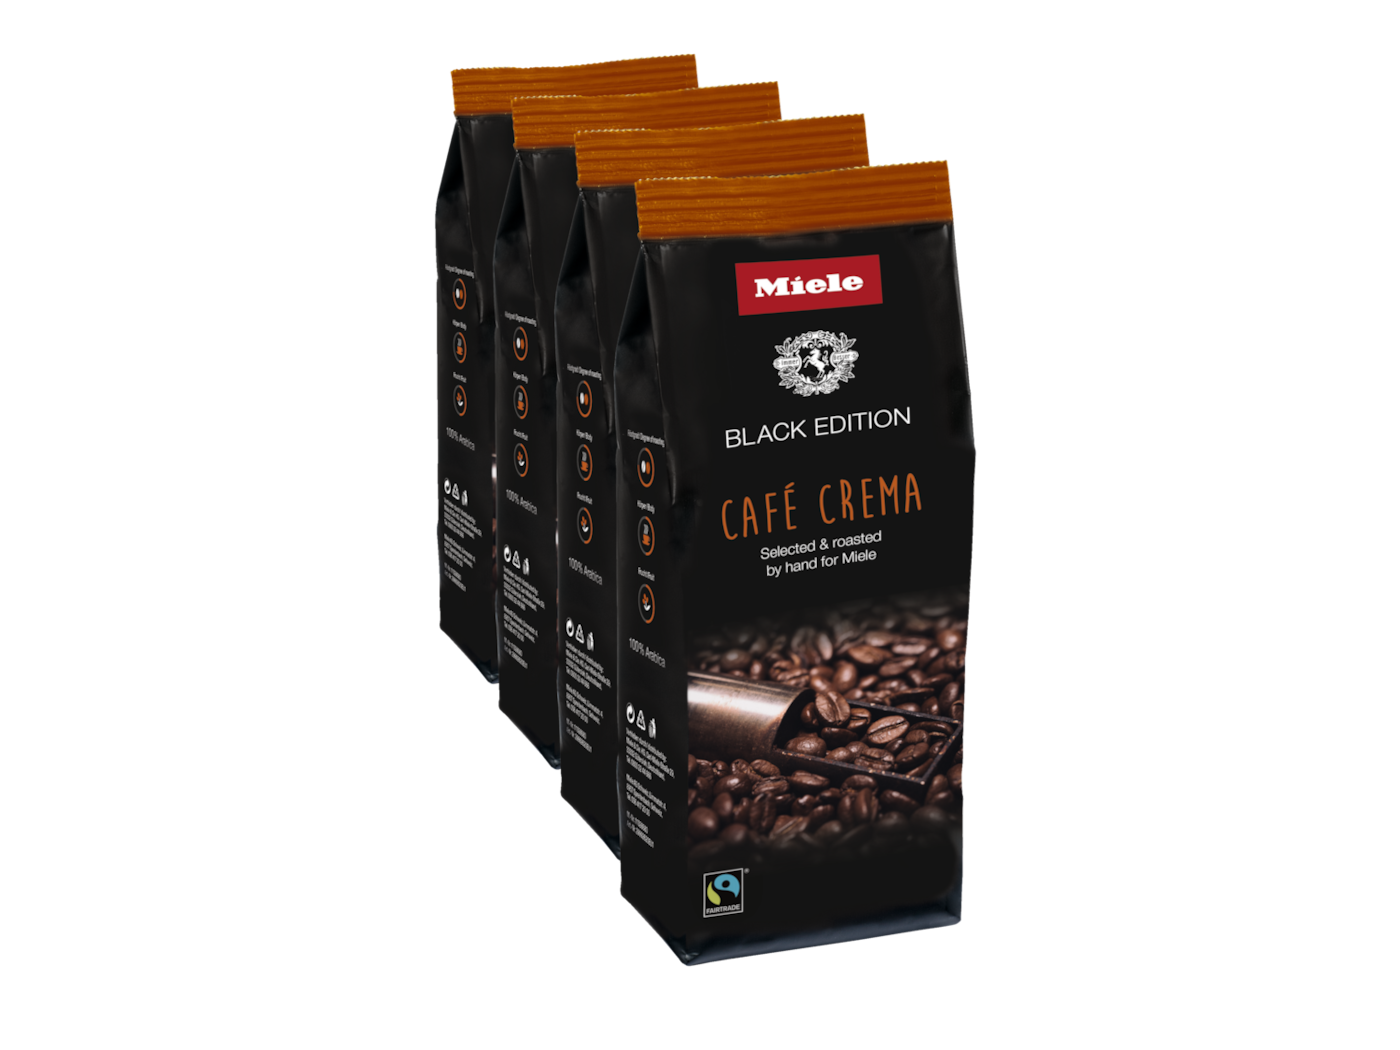 Miele Black Edition CAFÉ CREMA kohvioad, 4x250g product photo